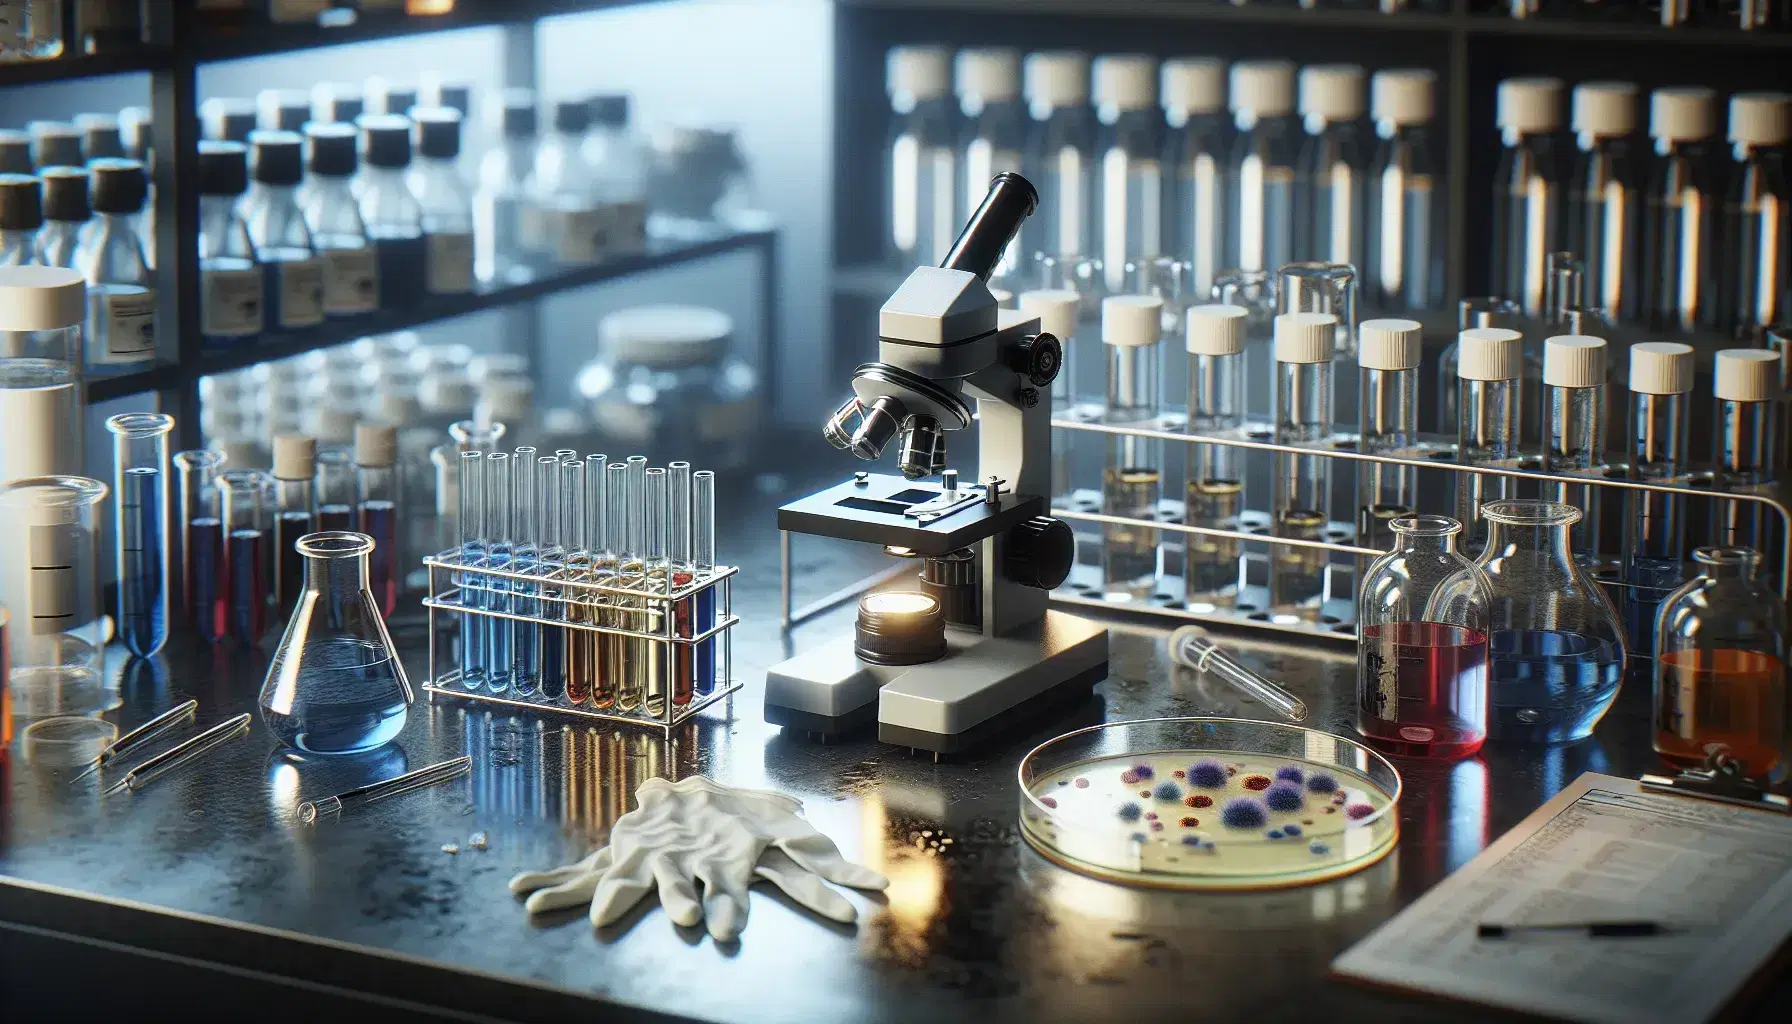 Microscopio negro y plateado en mesa de laboratorio con tubos de ensayo con líquidos de colores y plato de Petri con bacterias, rodeado de guantes y frascos en estante.